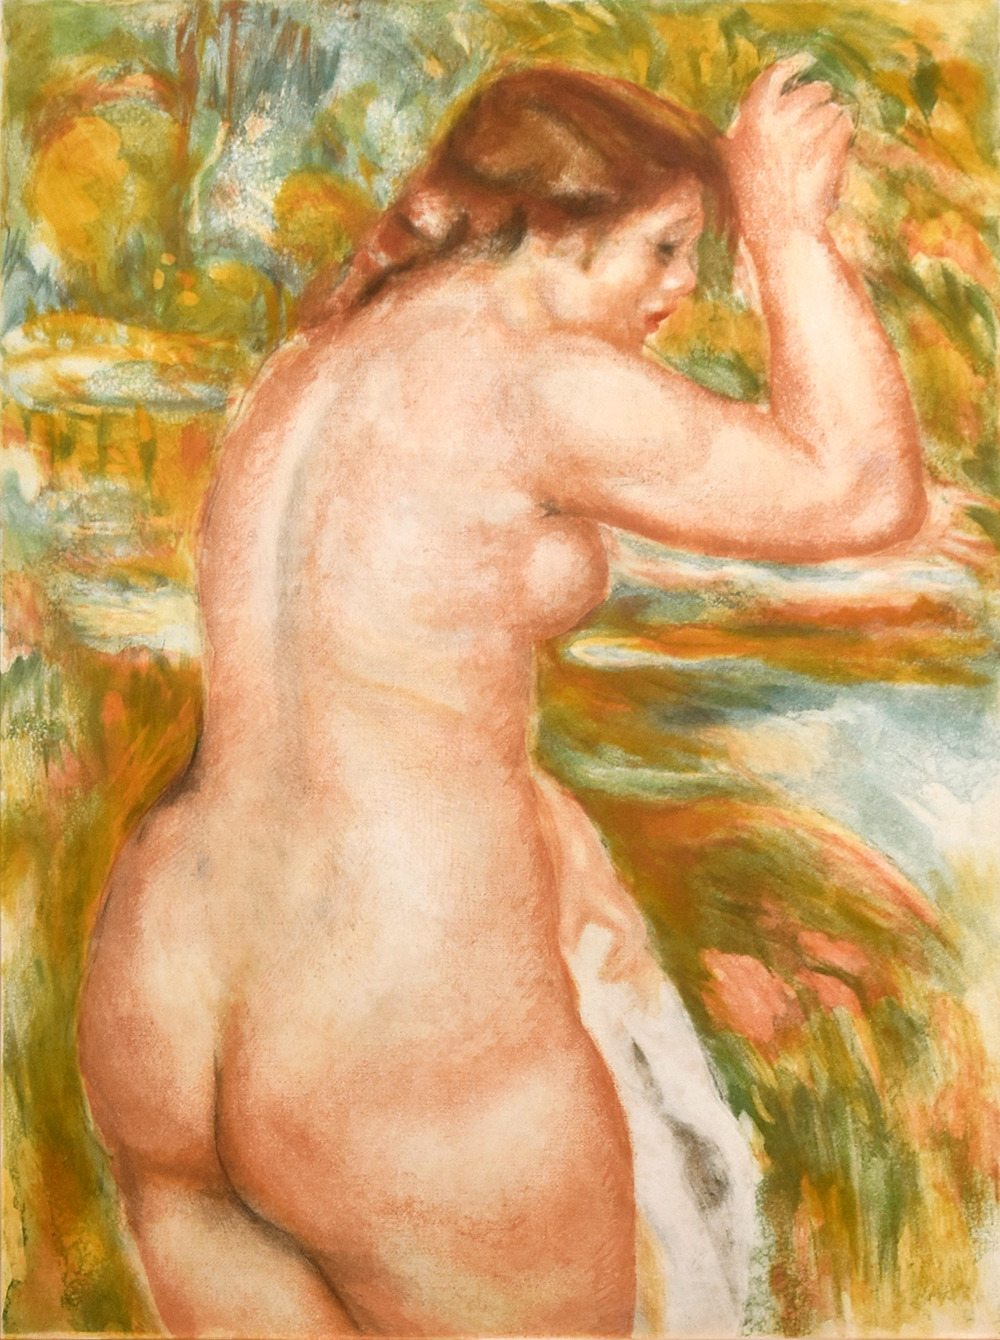 Jacques Villon print, Nu (Nude), after Pierre-Auguste Renoir